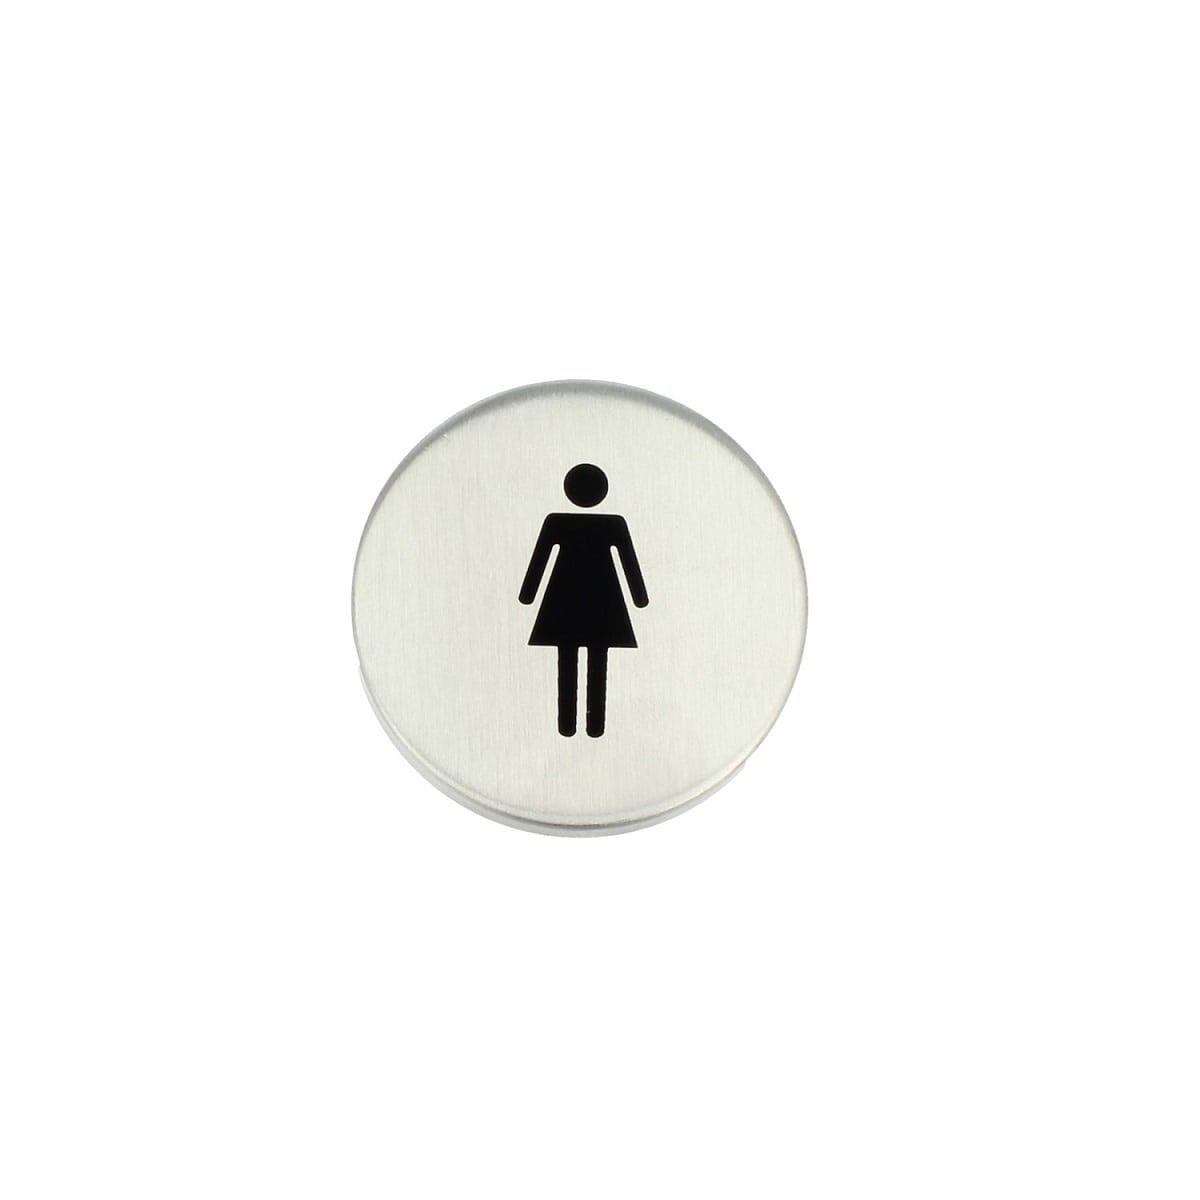 MS Beschläge Türbeschlag Piktogramm Türschild Türsymbol Damen Herren WC